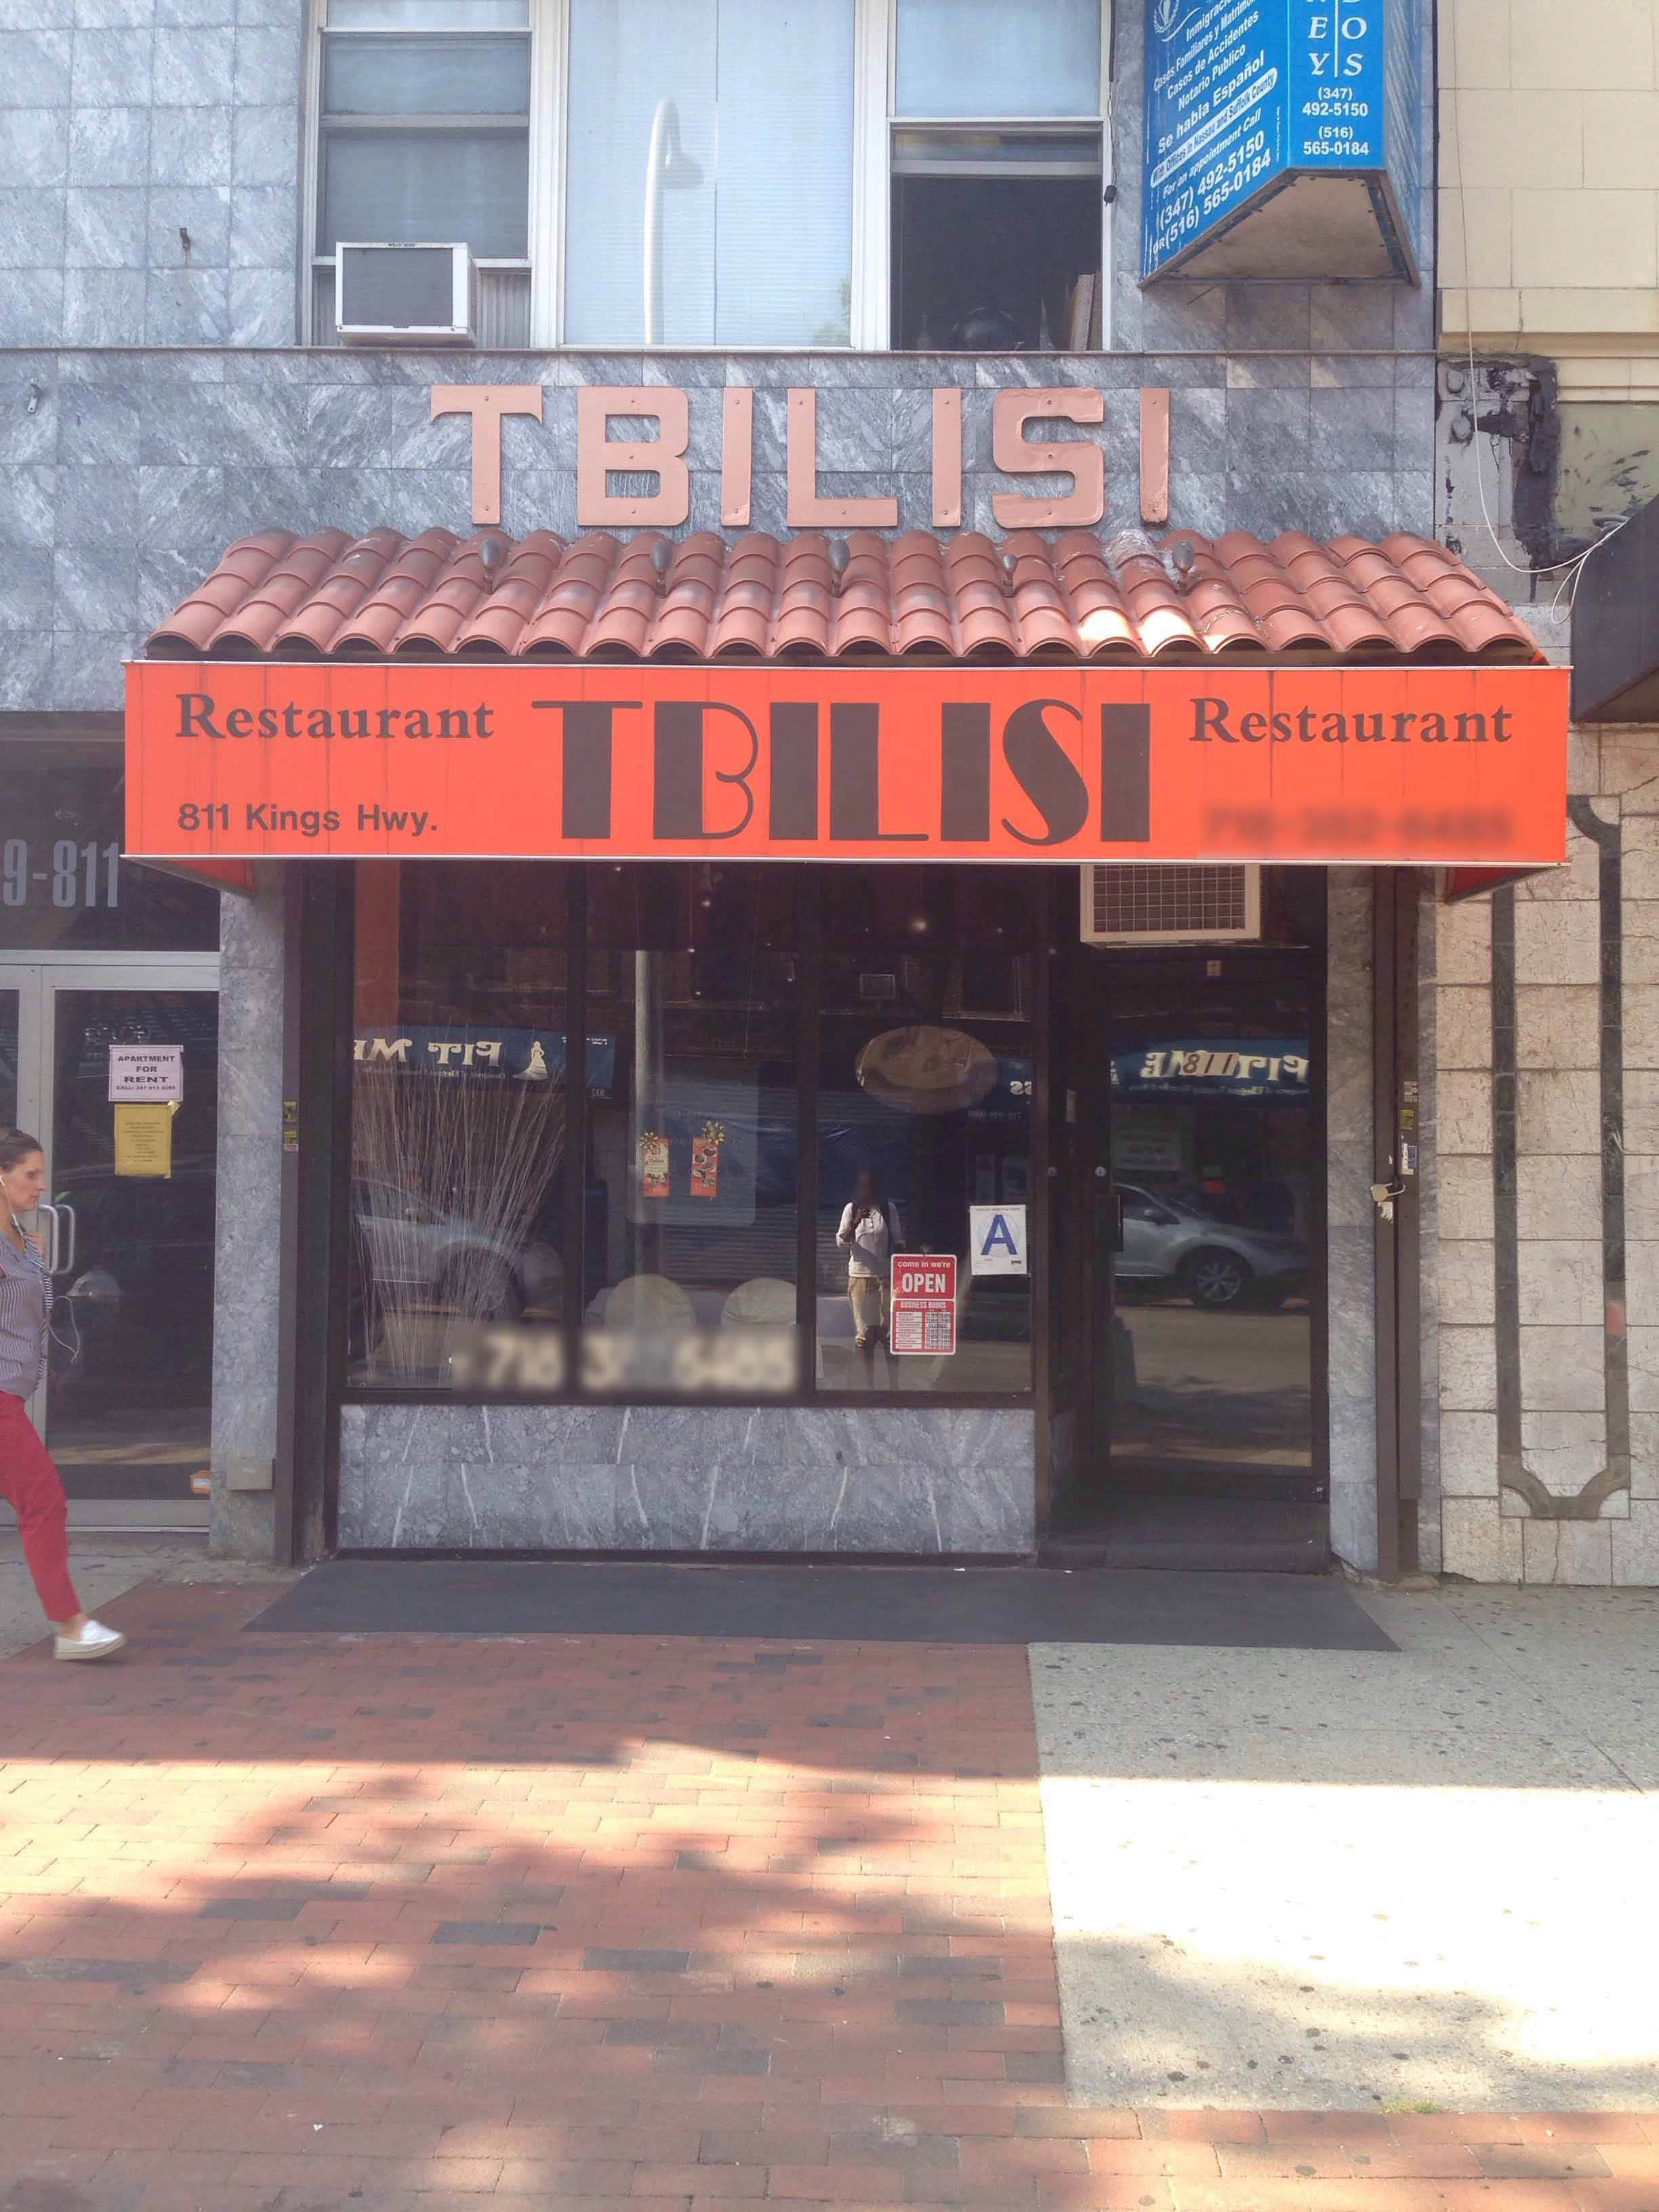 11223 Tbilisi Restaurant Sheepshead Bay Brooklyn New York City